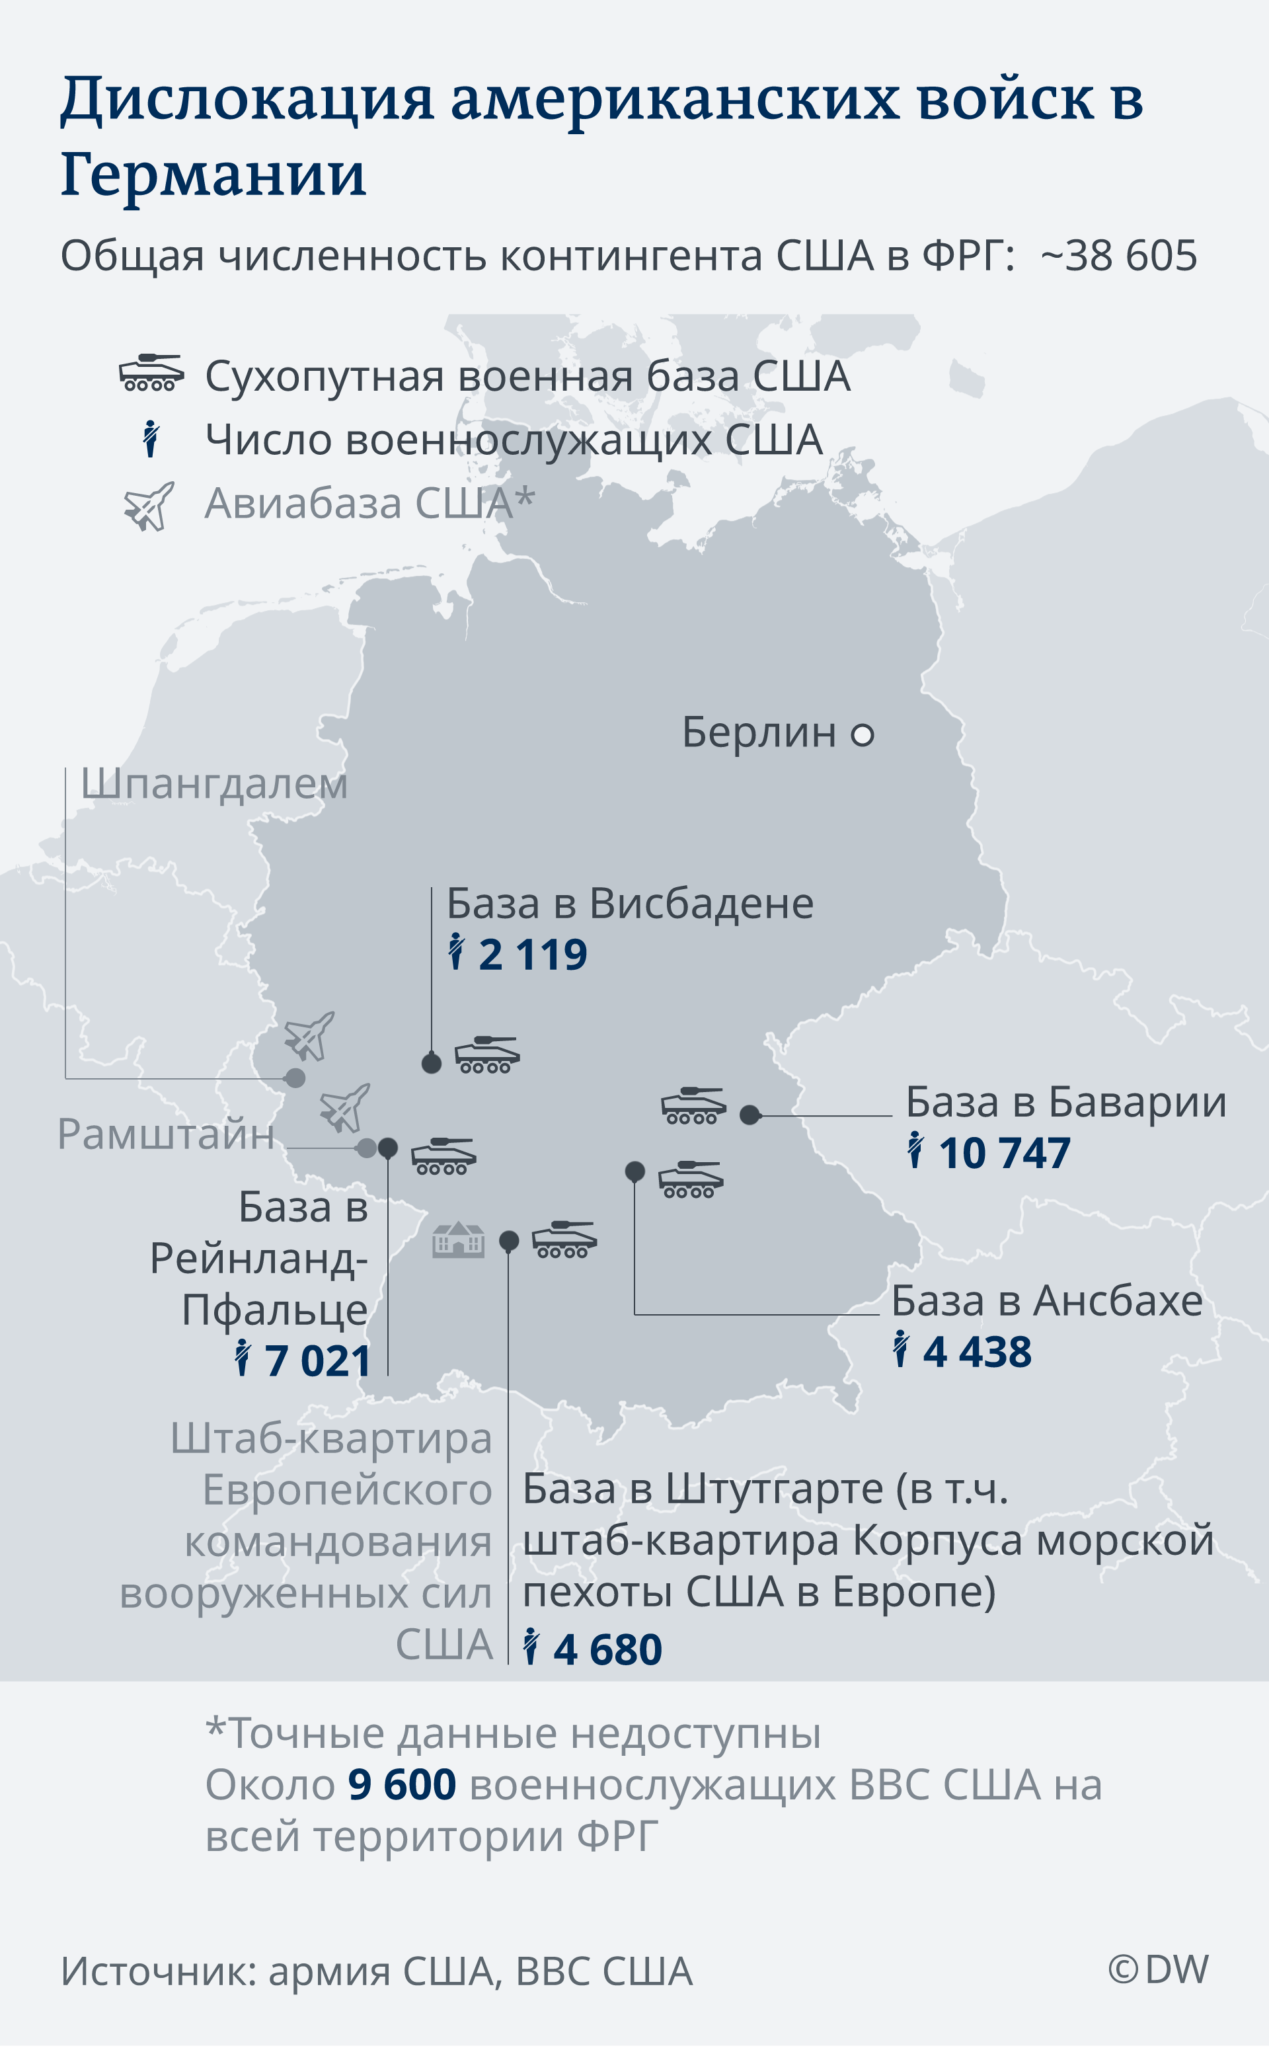 Американские военные базы в Германии карта. НАТО численность войск 2020 в Европе. Карта баз США В Германии. Американские военные базы в Германии количество. Численность нато в европе